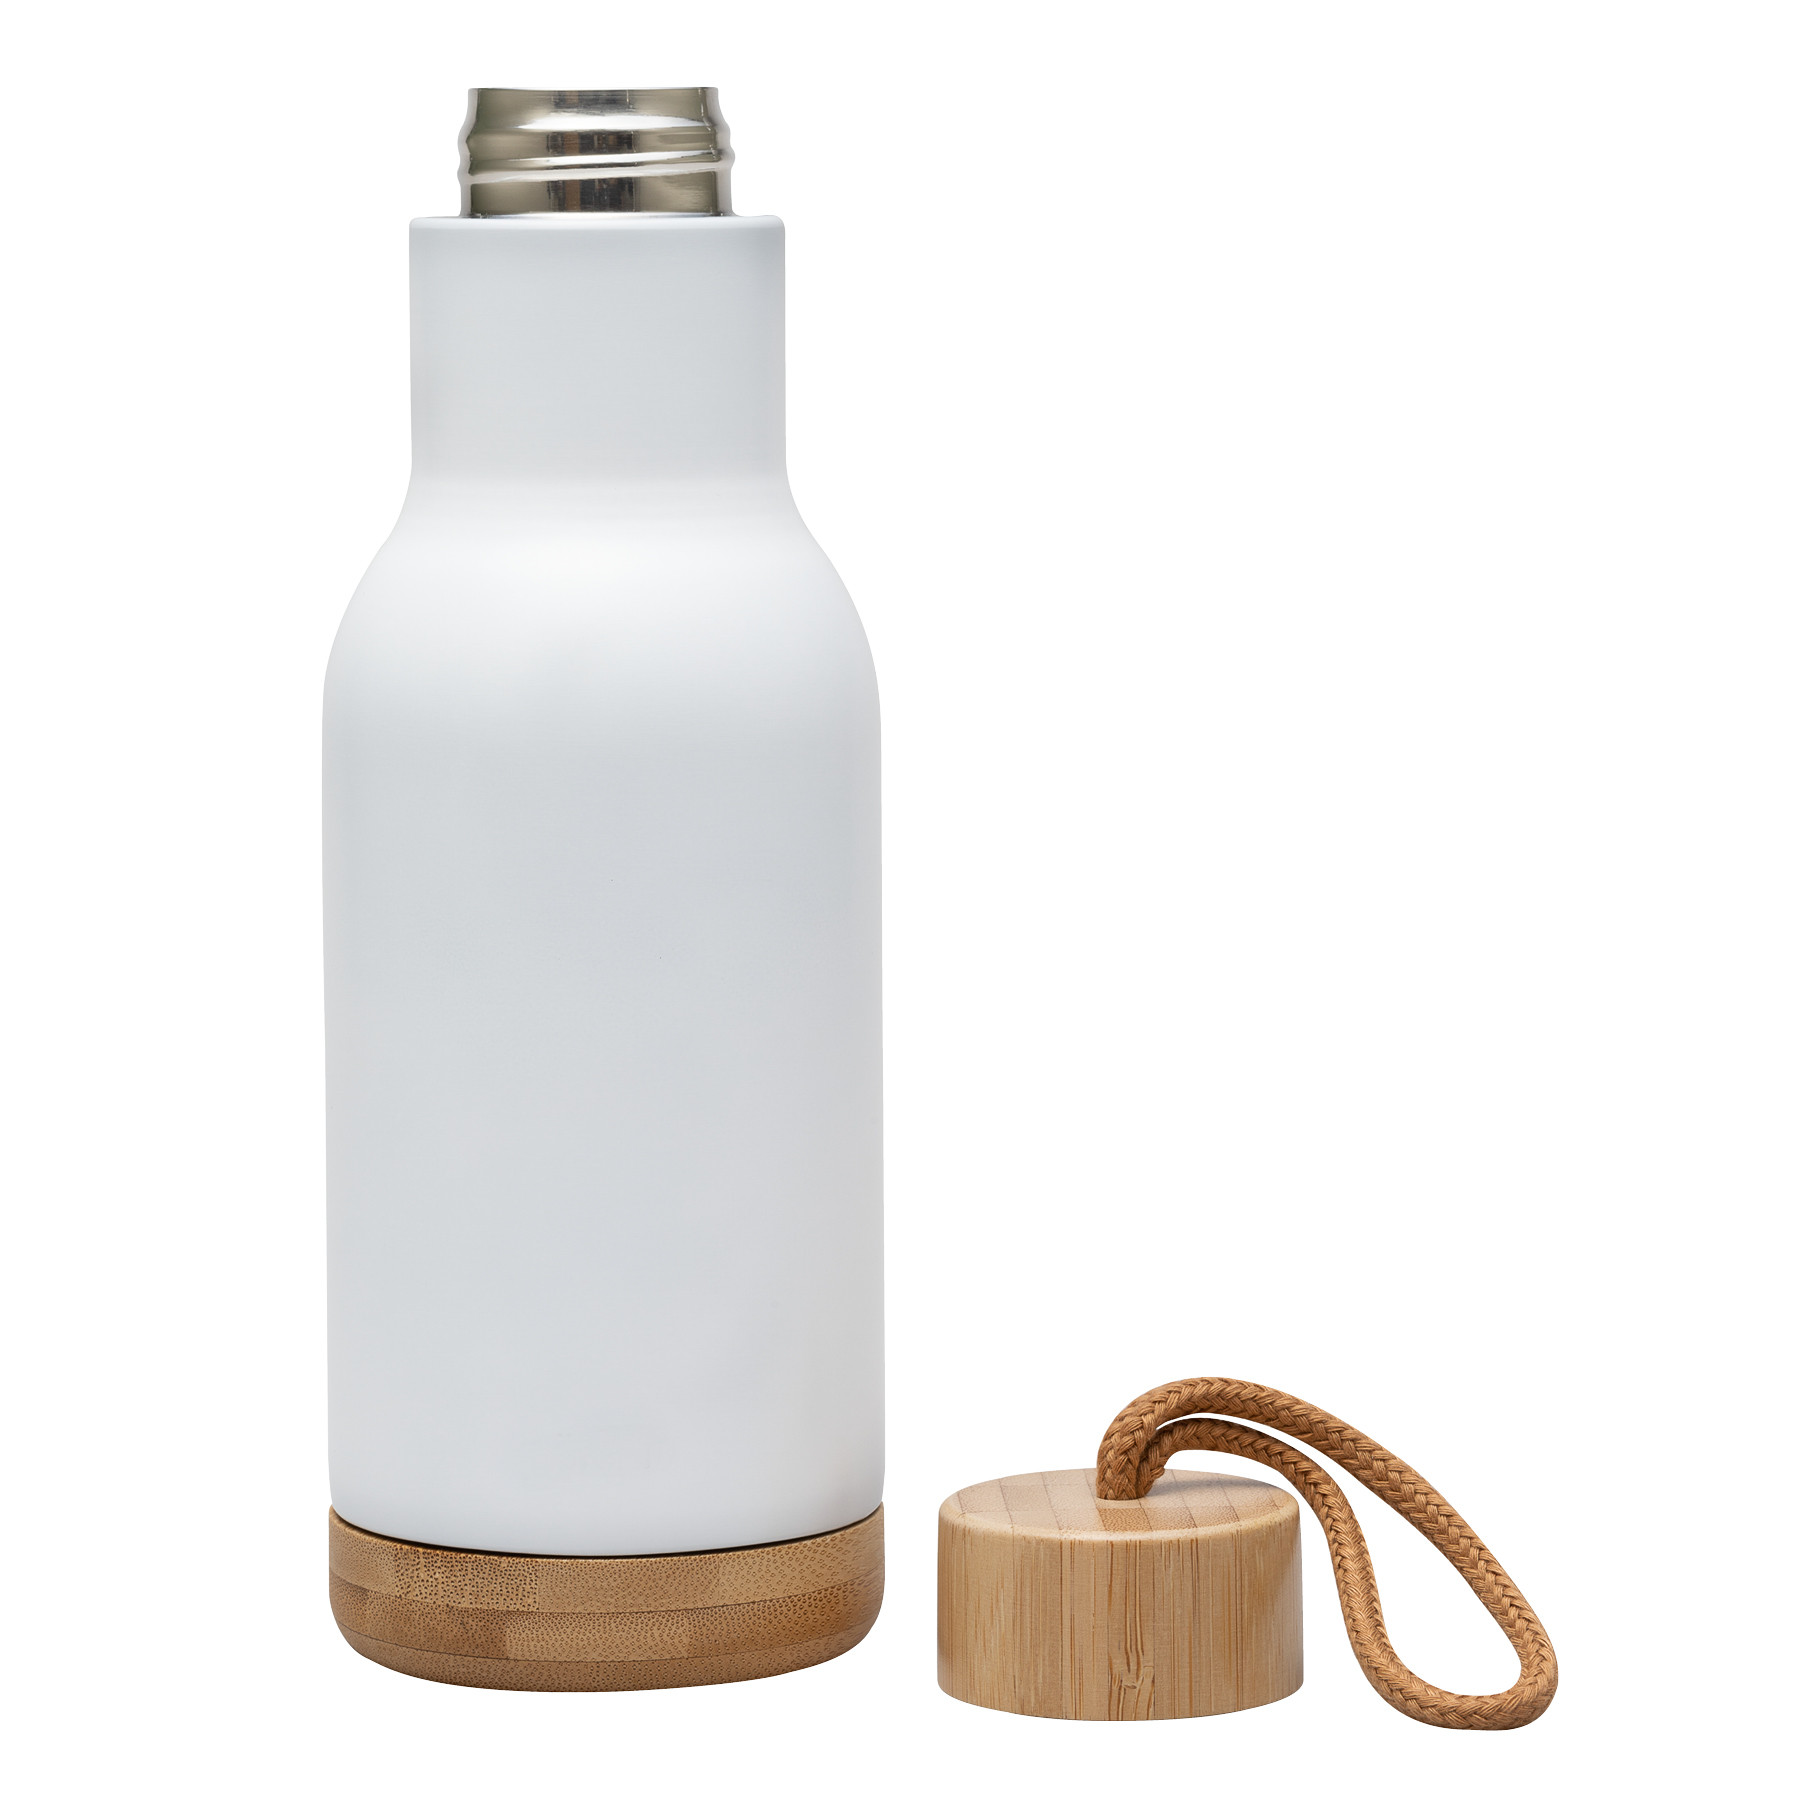 https://www.hansonellis.com/mm5/graphics/00000001/3/custom-double-wall-stainless-steel-water-bottle-log-15r74.jpg